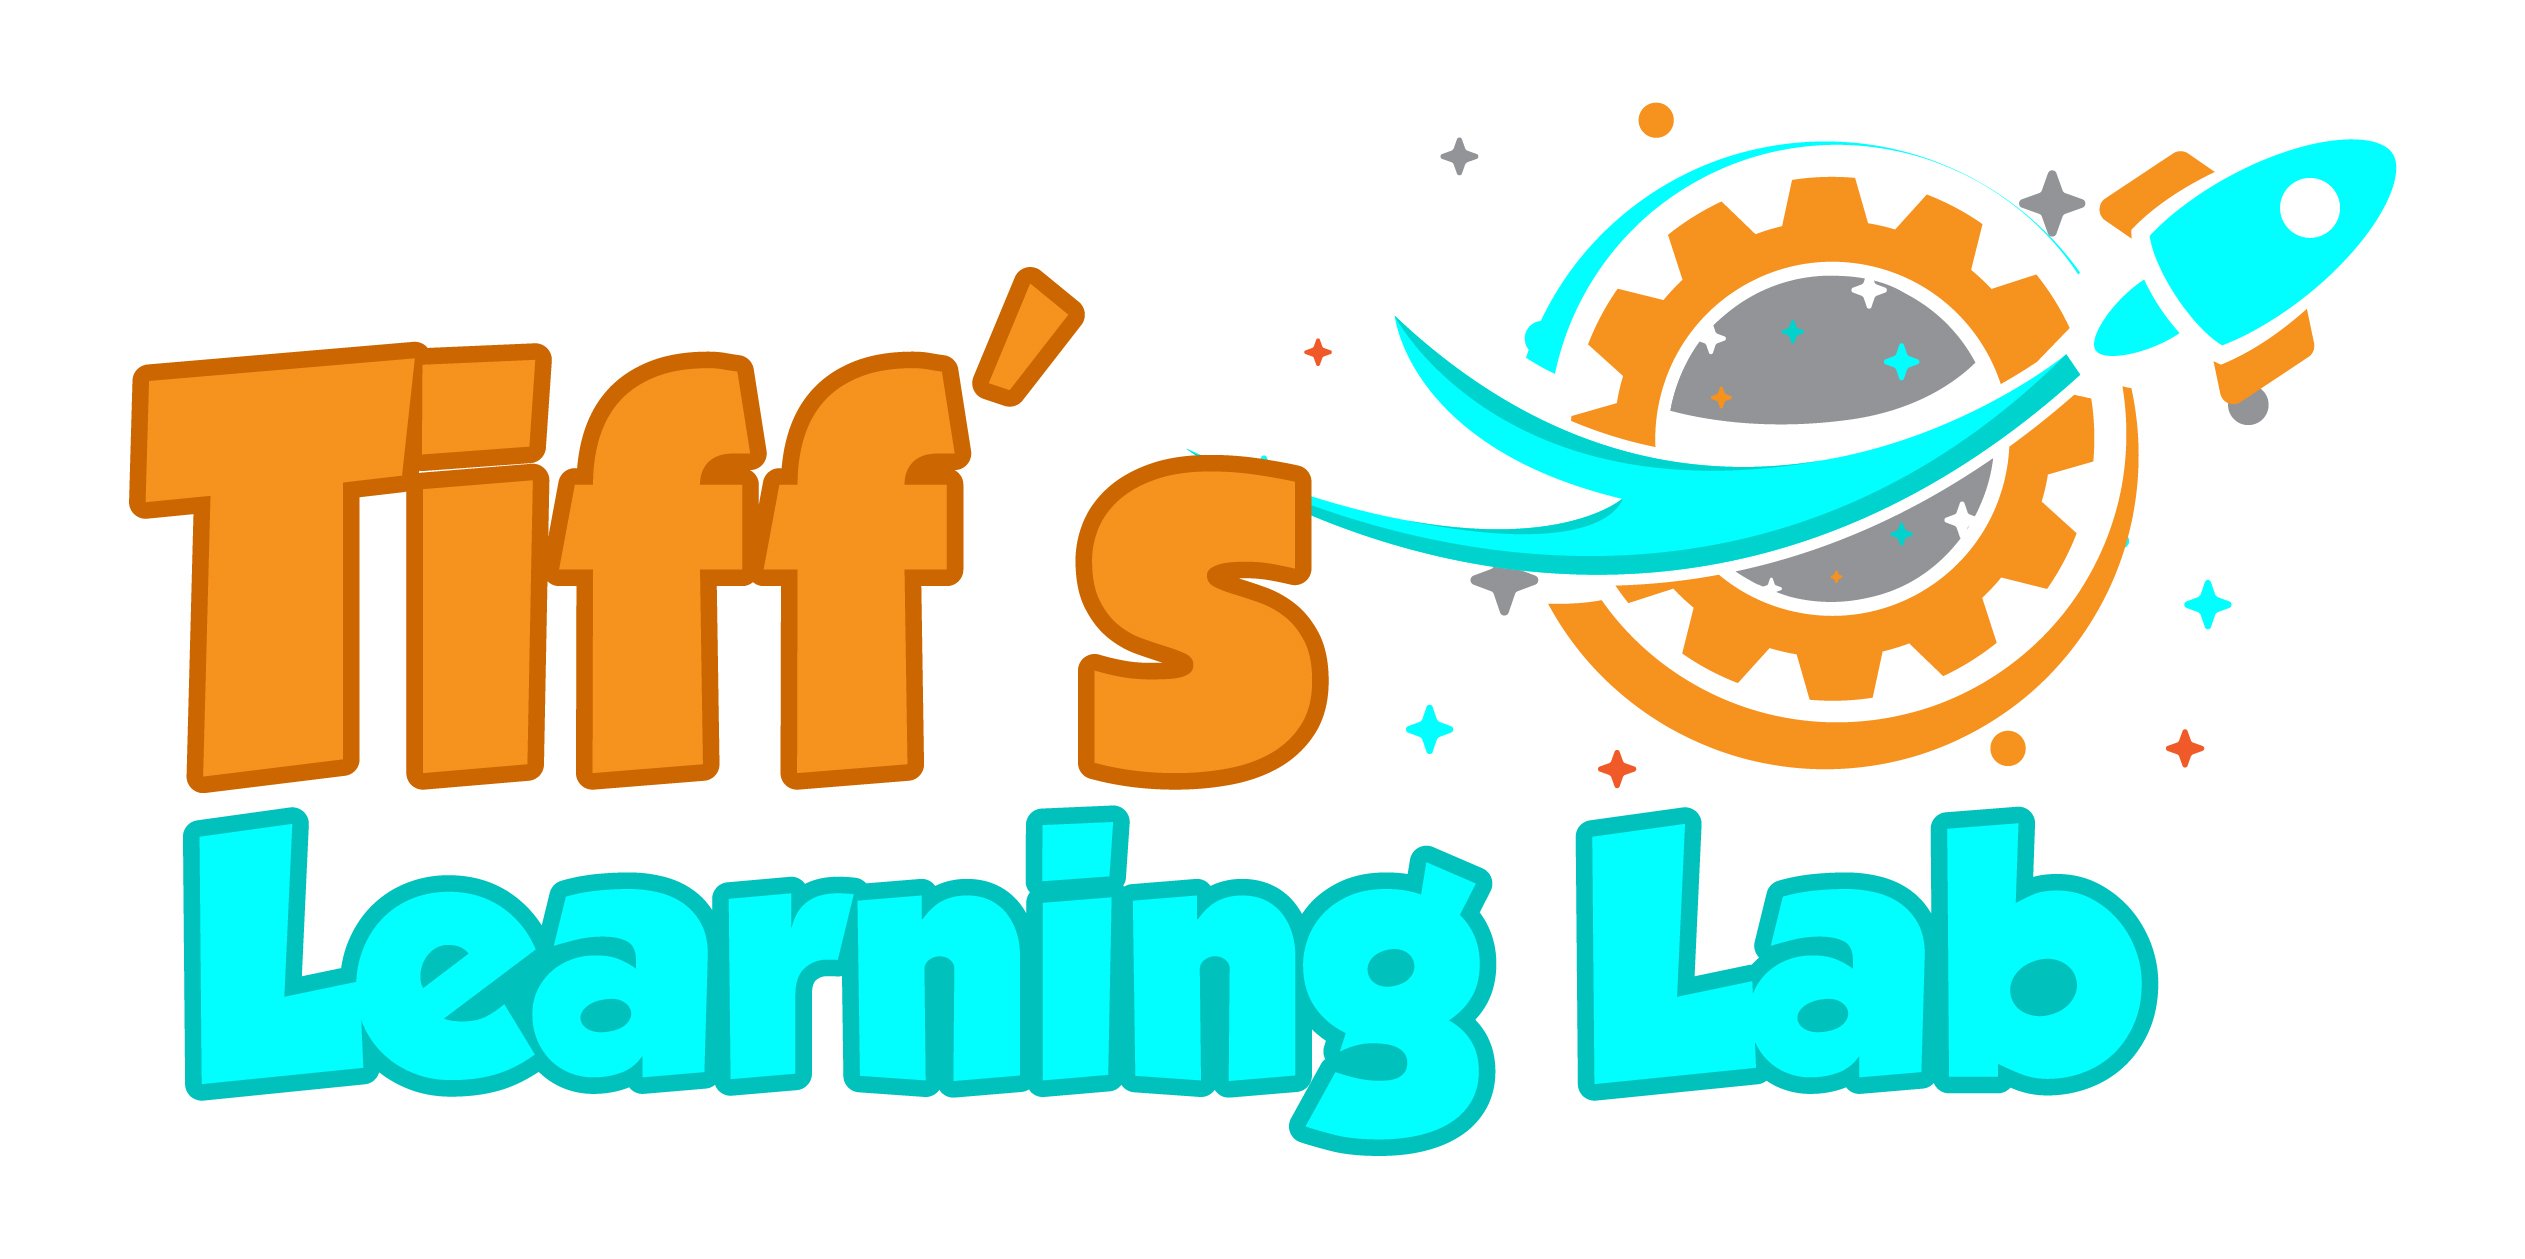 Tiffs Learning Lab logo